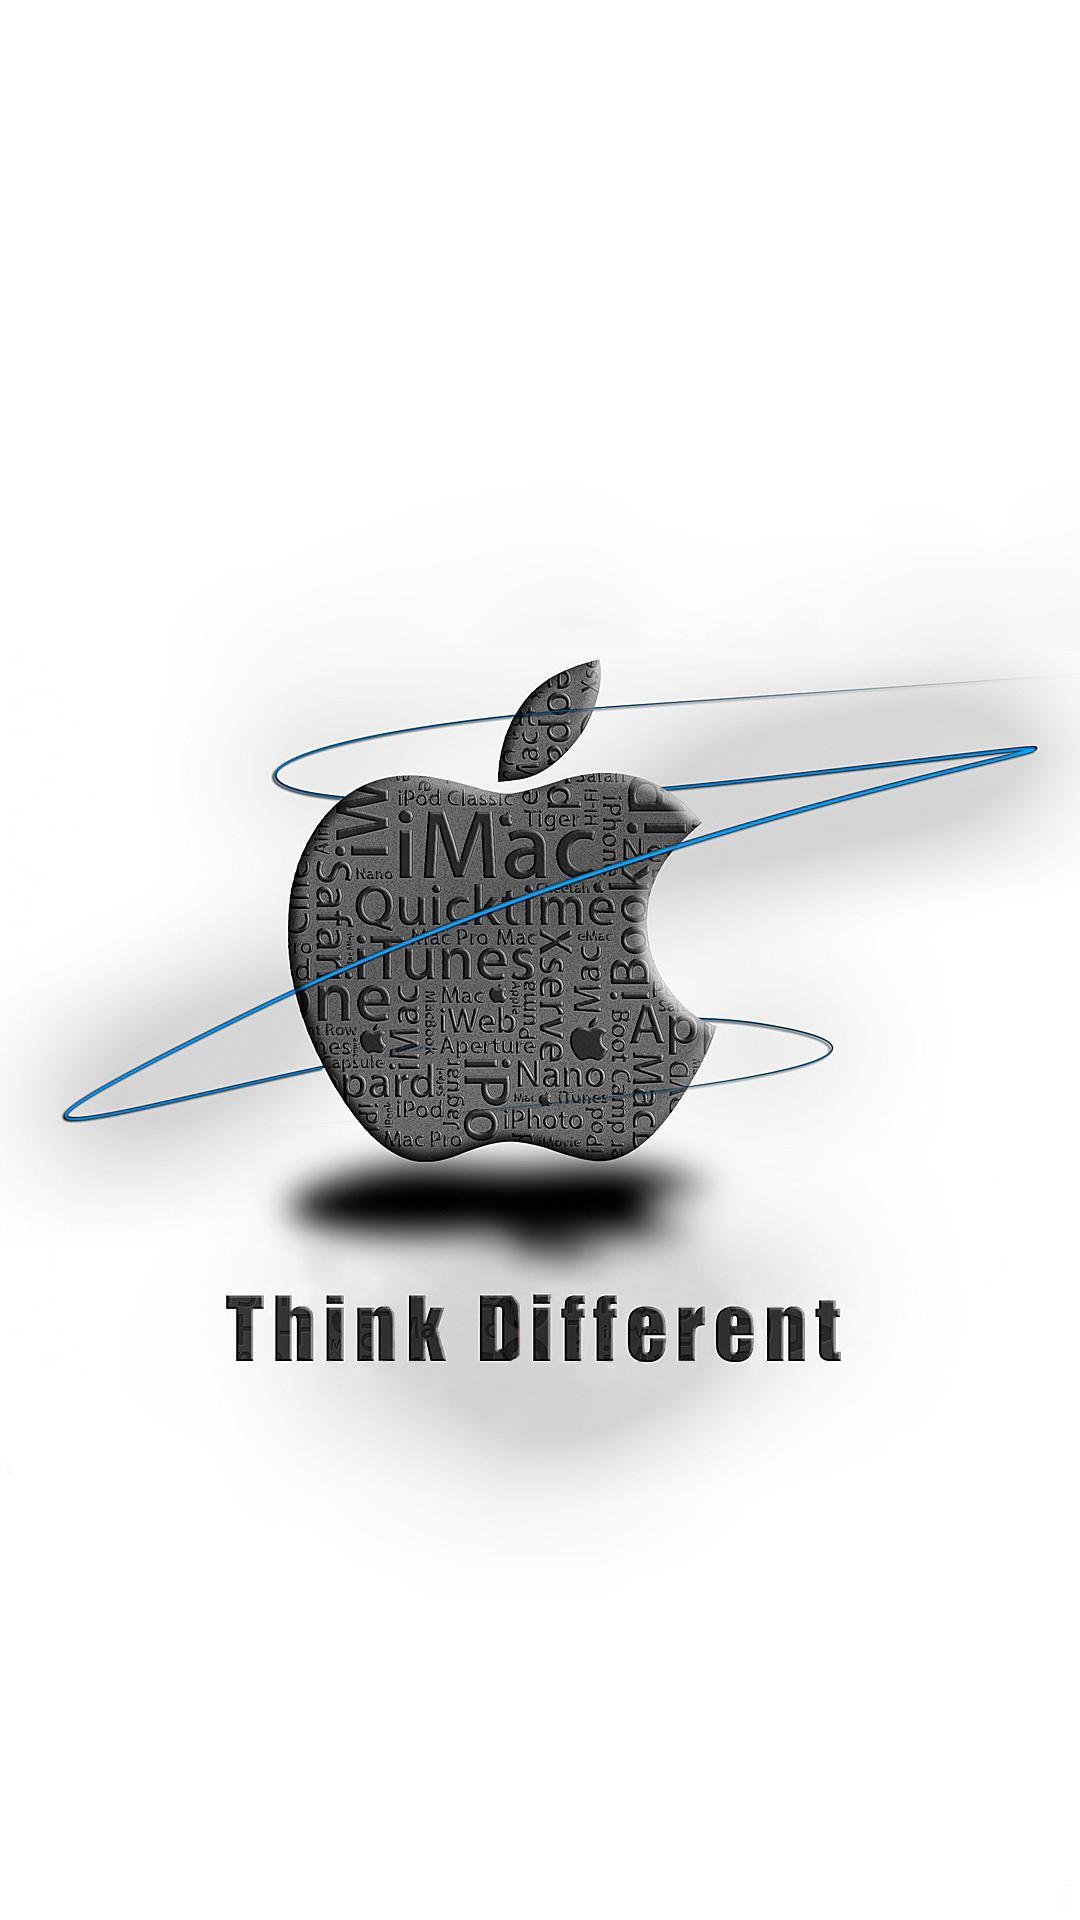 ディズニー画像ランド 最新apple ロゴ 壁紙 Mac